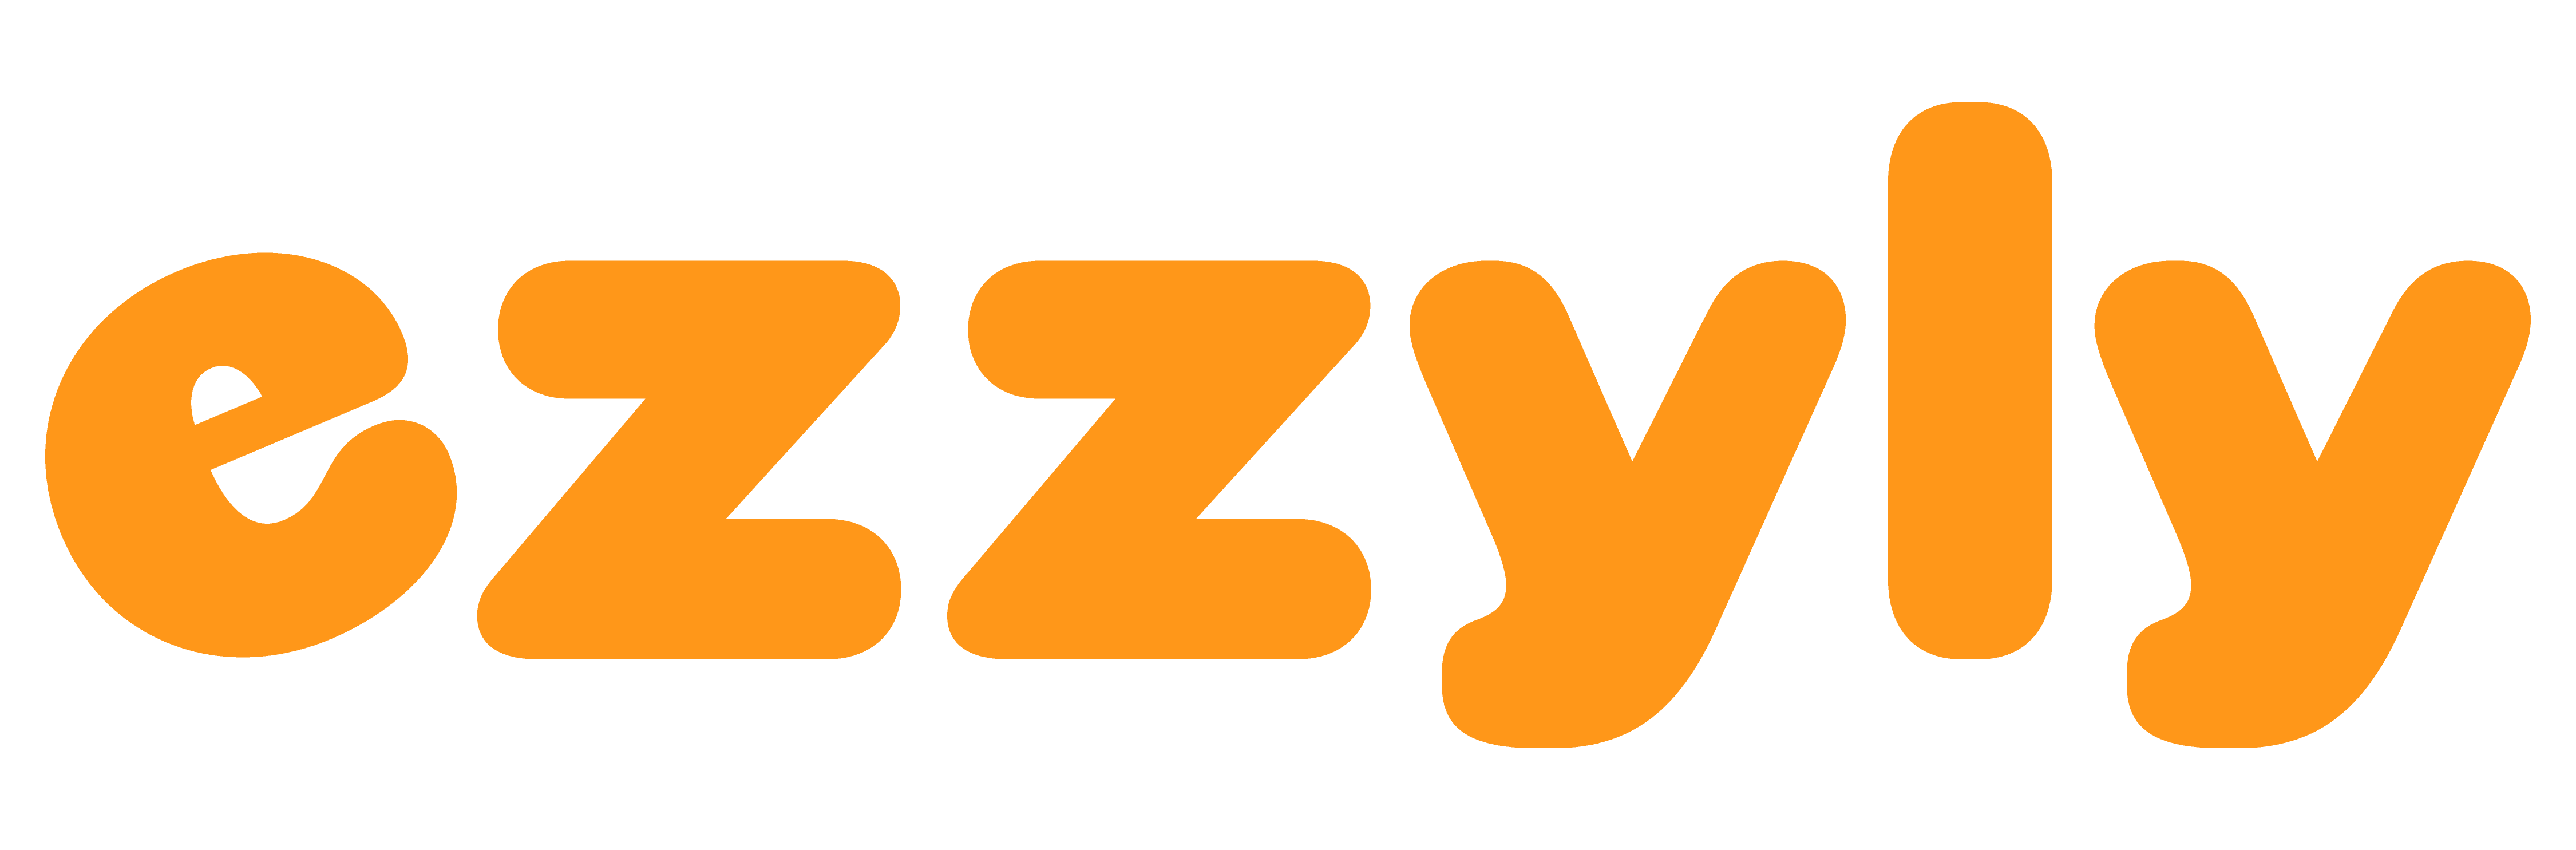 Ezzyly